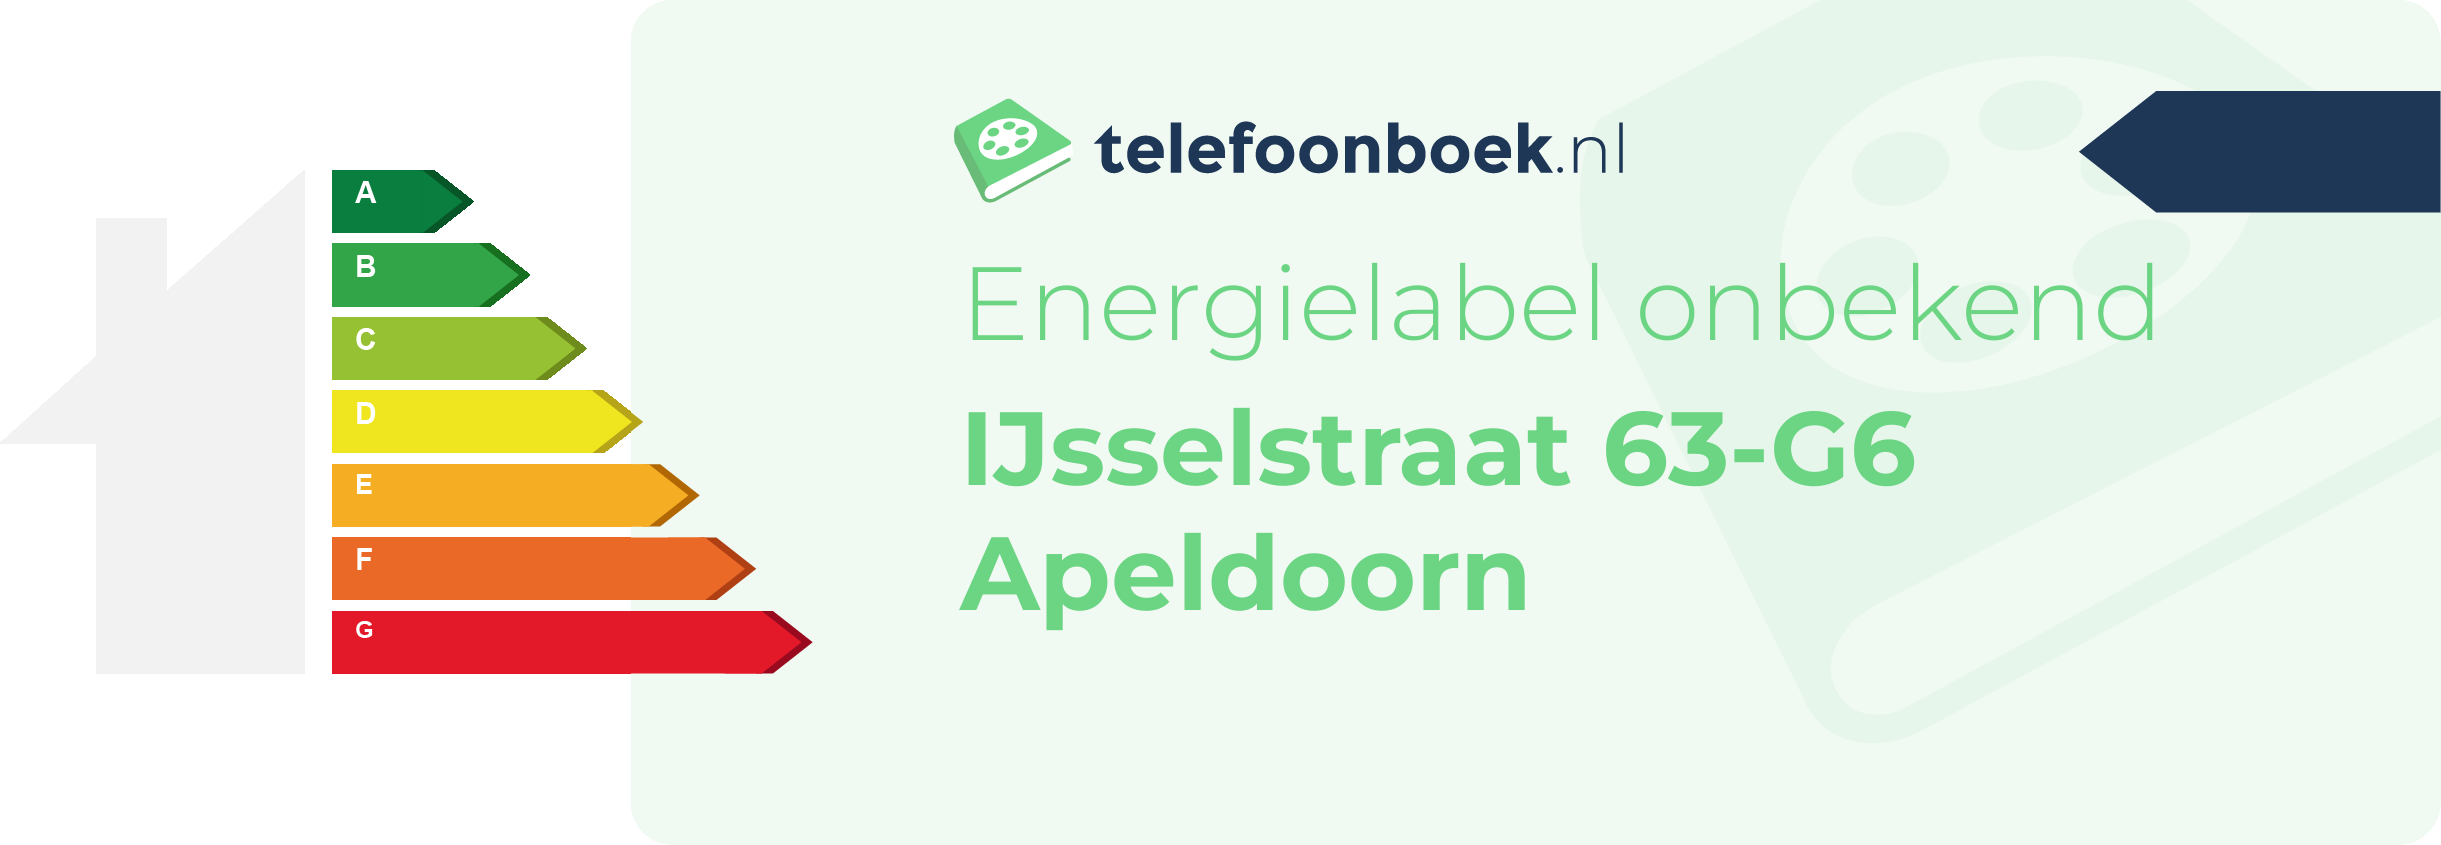 Energielabel IJsselstraat 63-G6 Apeldoorn